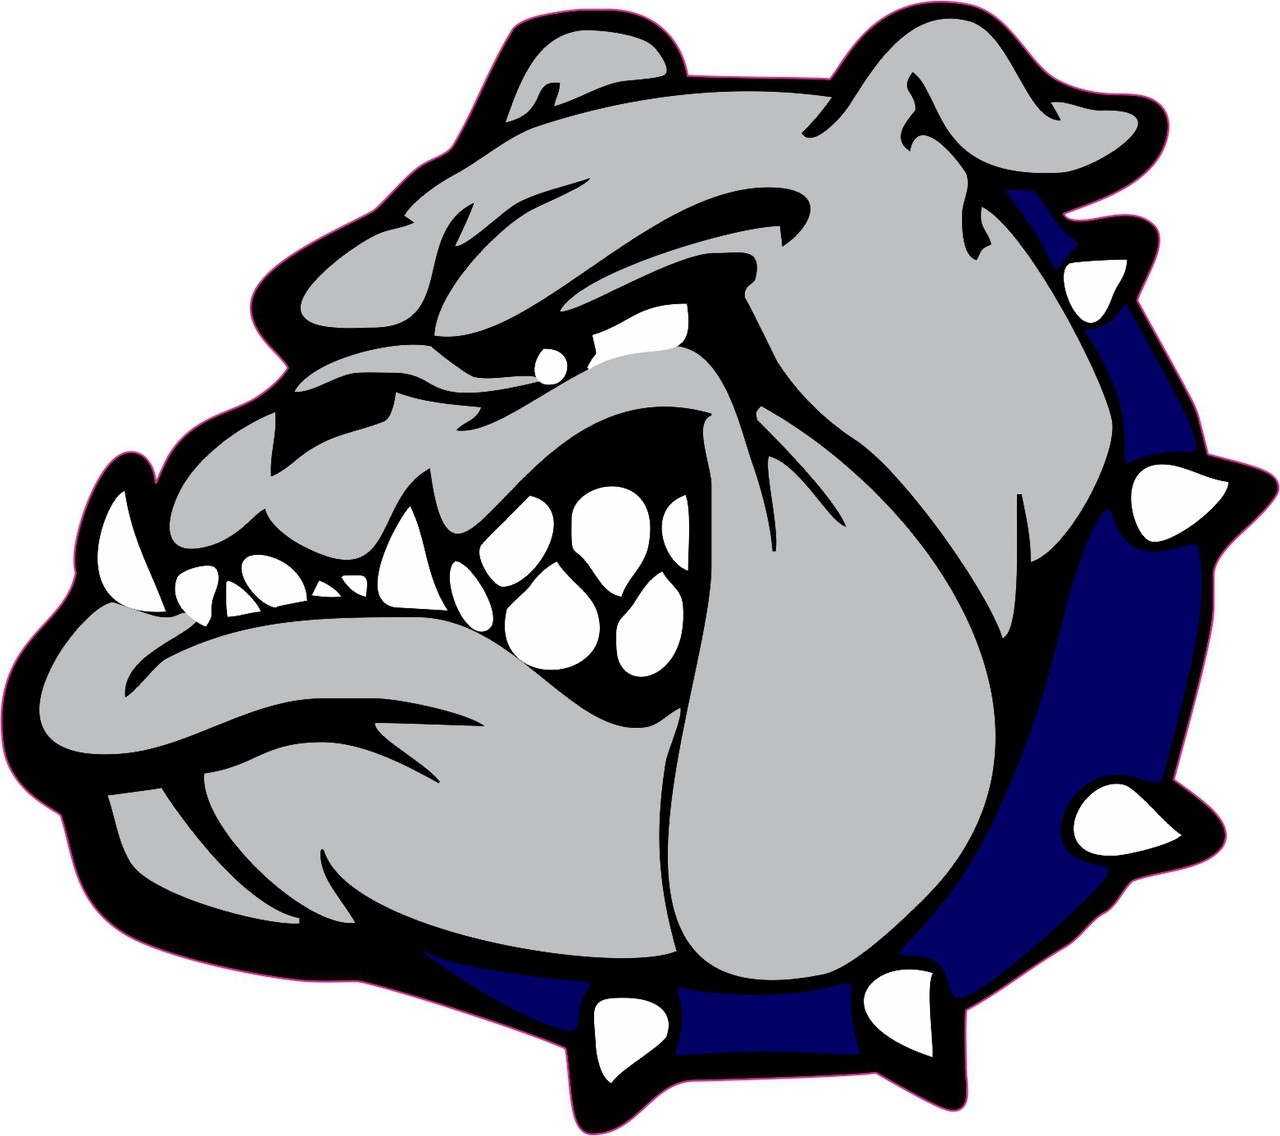 Bulldog Logos Mascots